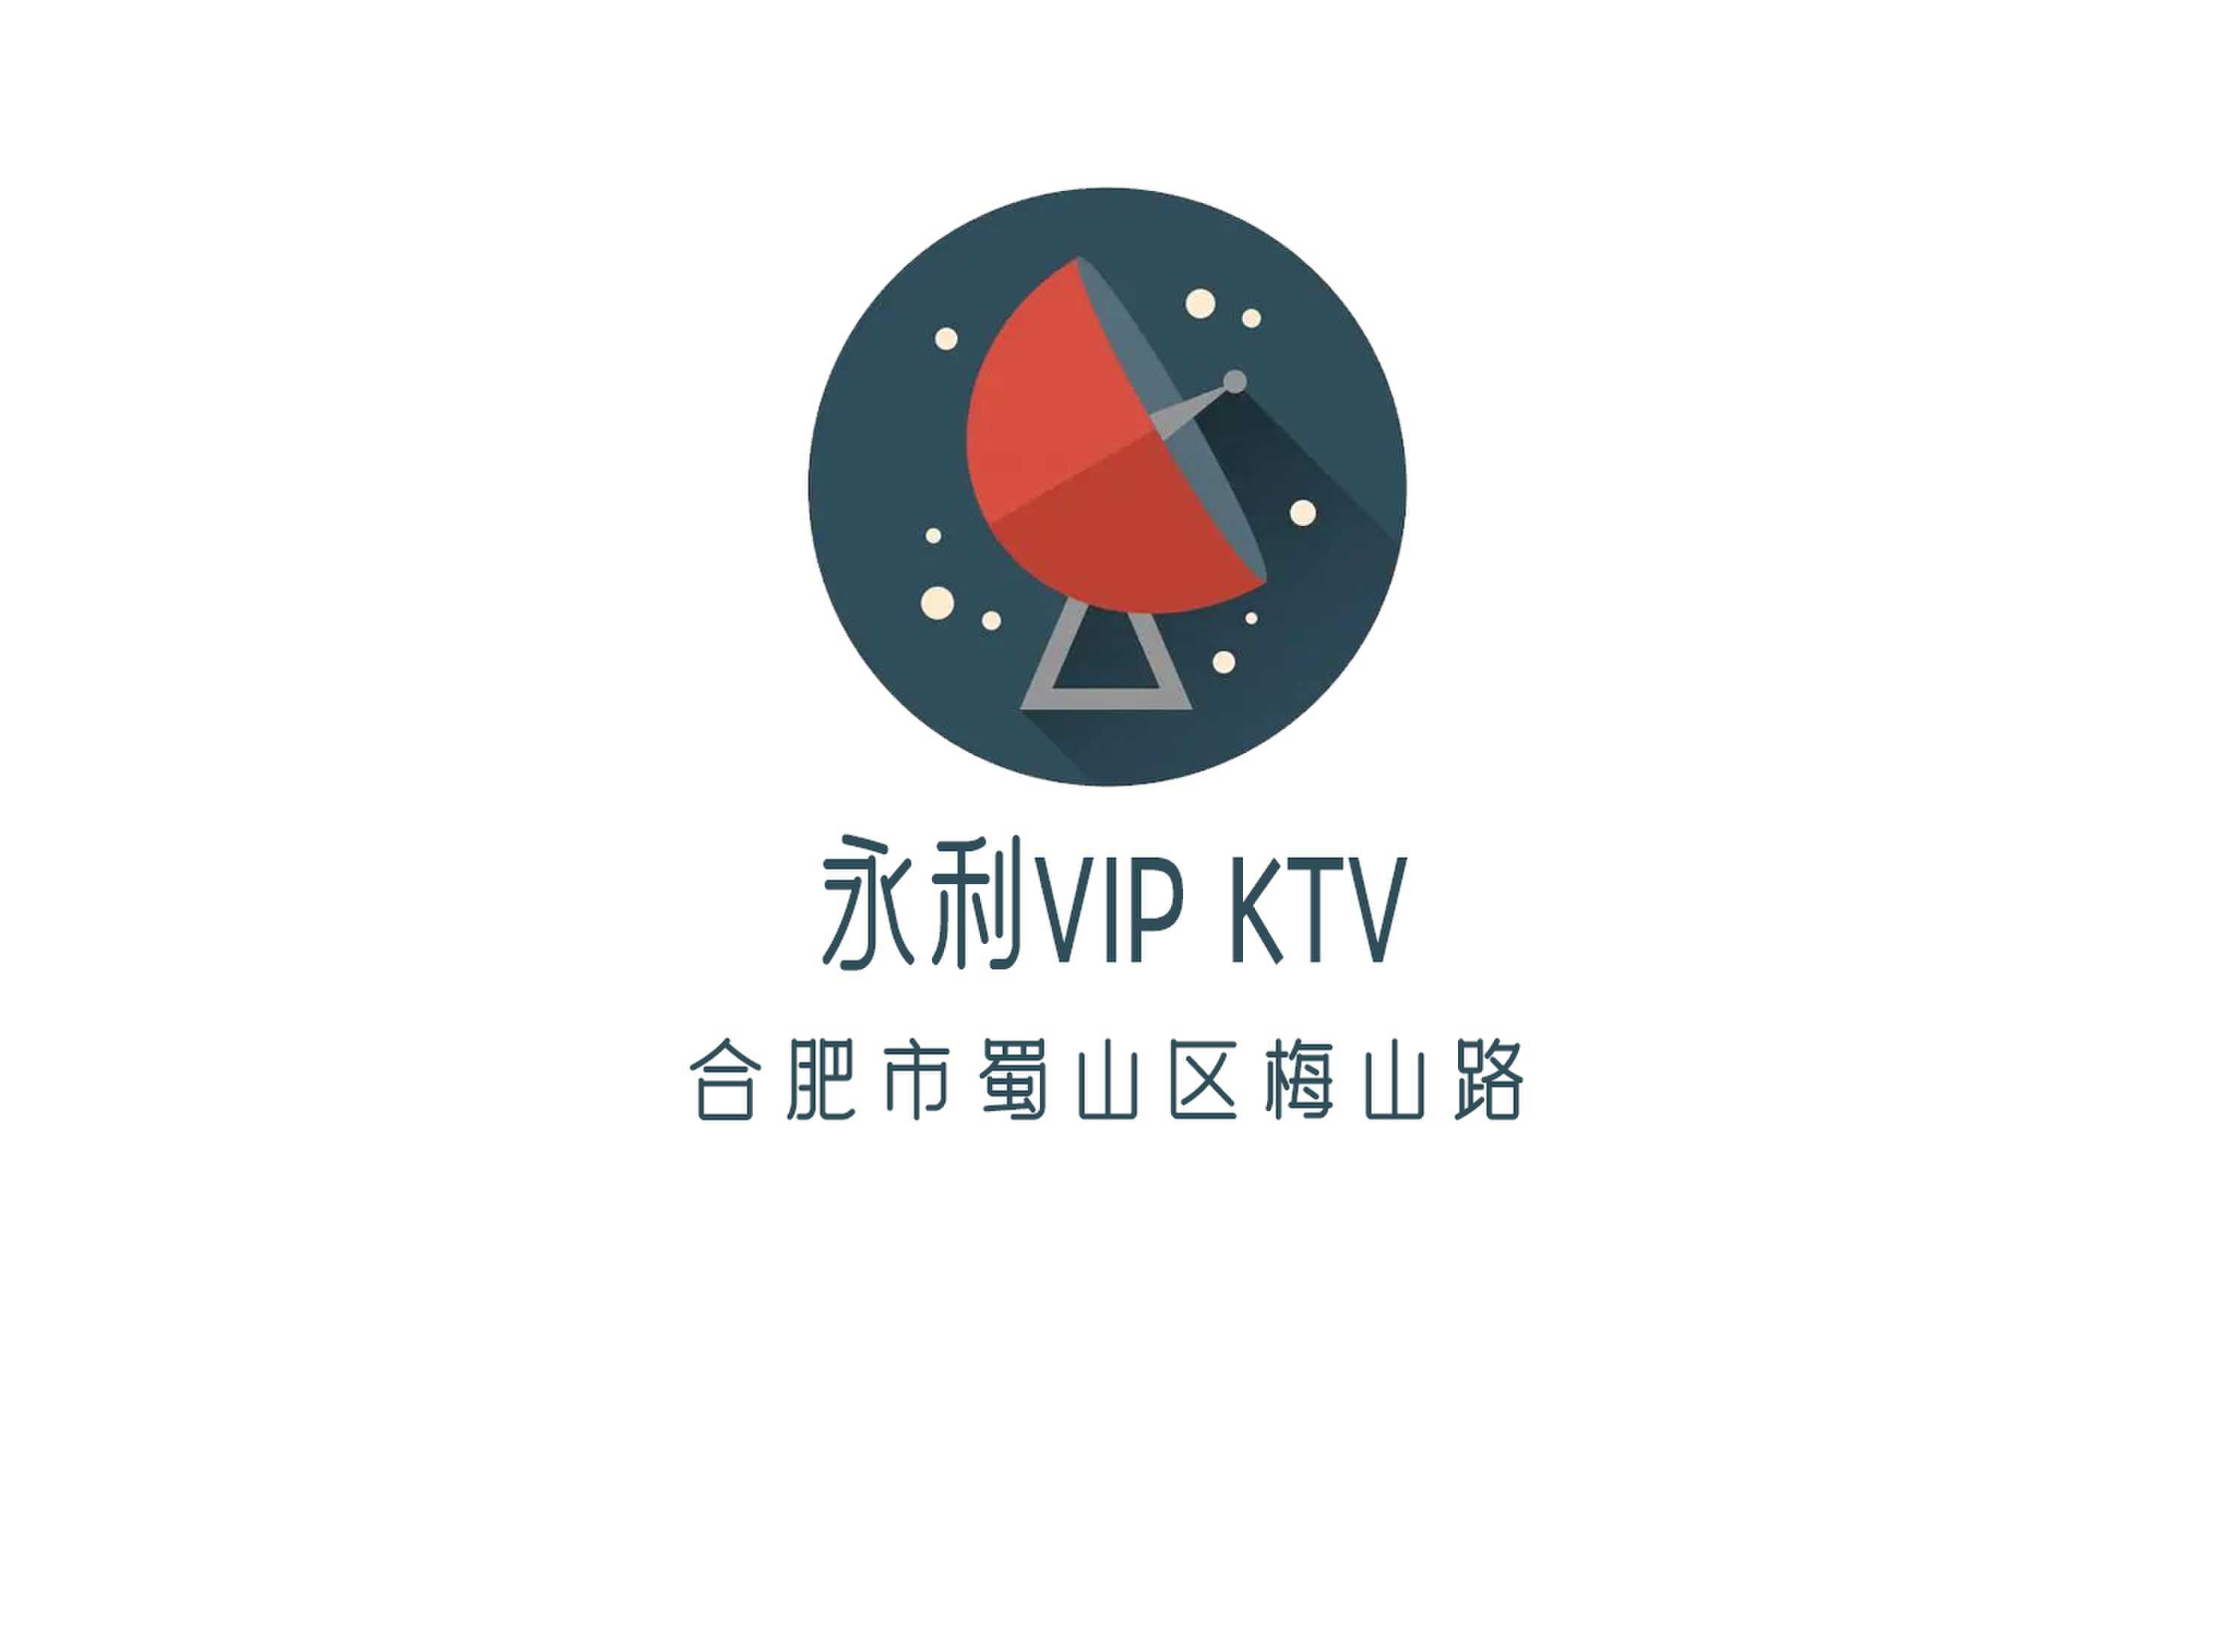 永利VIP KTV